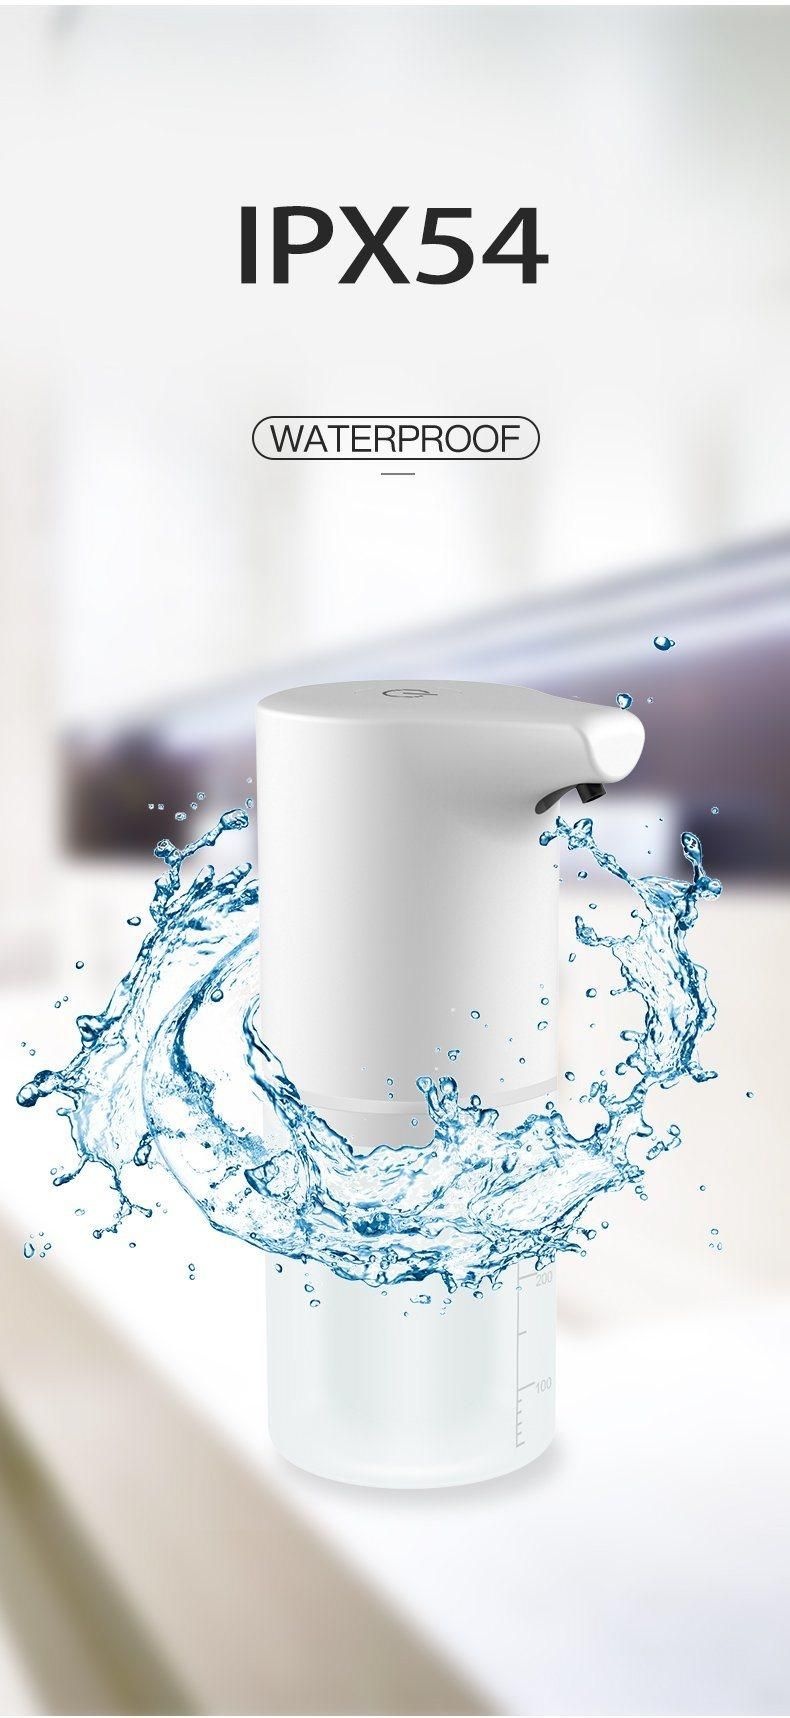 Auto Sensing Liquid Foam Soap Dispenser